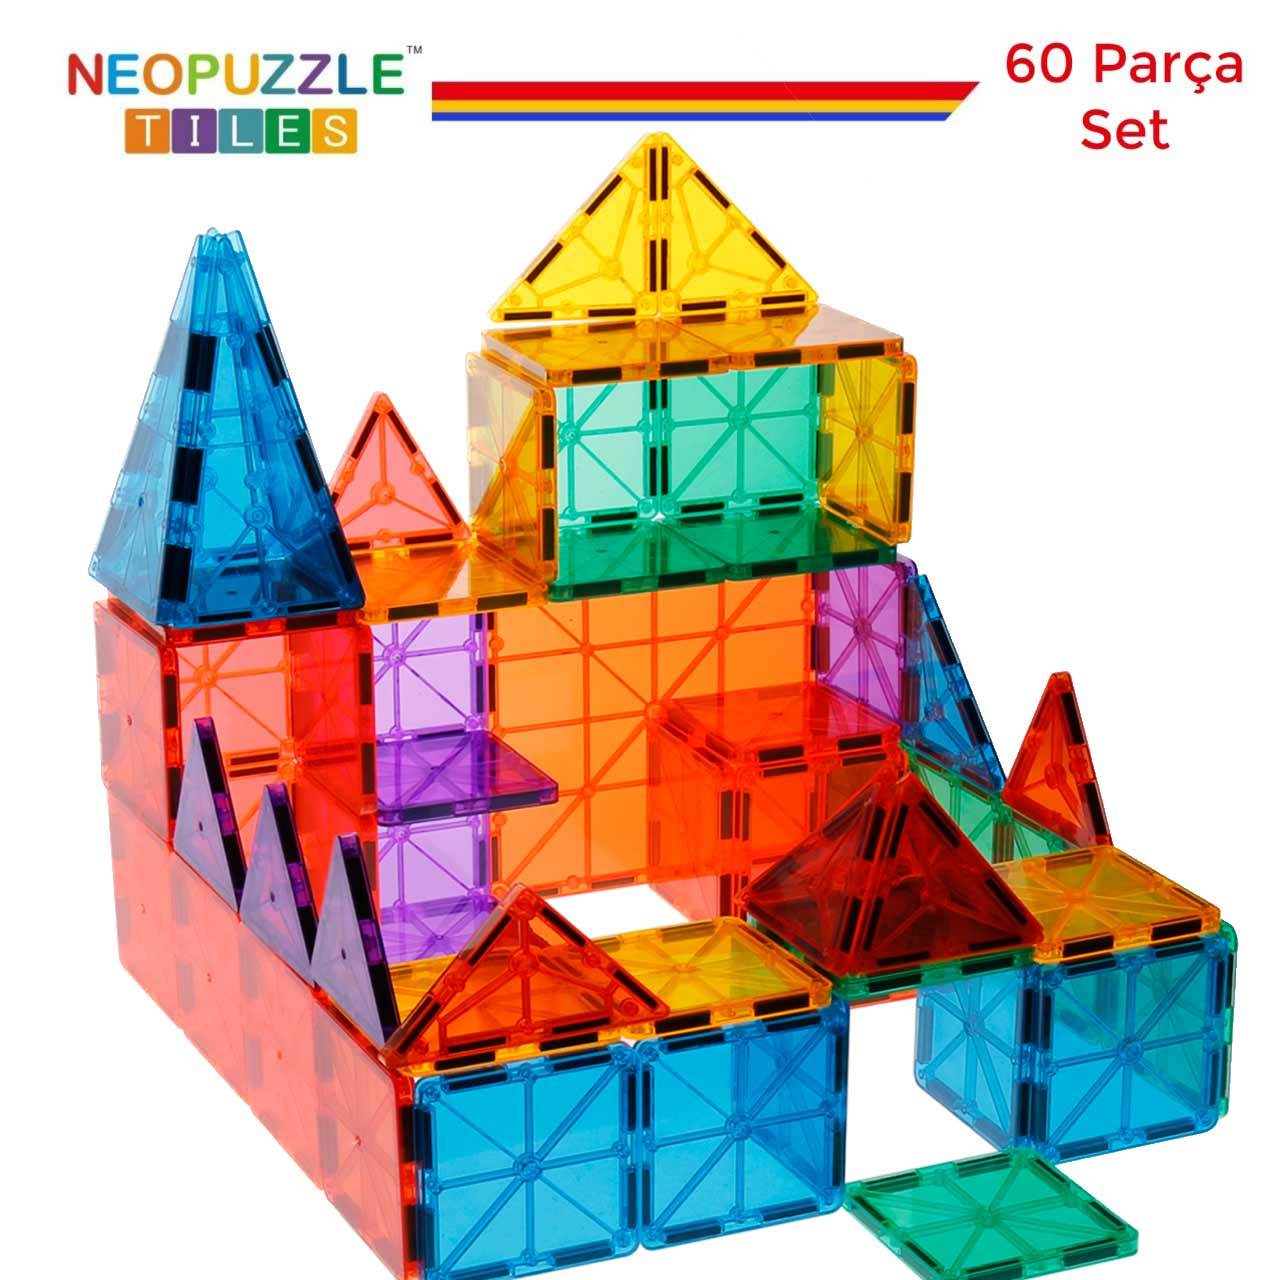 NeoPuzzle Tiles Mıknatıslı Yapı Oyuncağı 60 Parça Temel Set